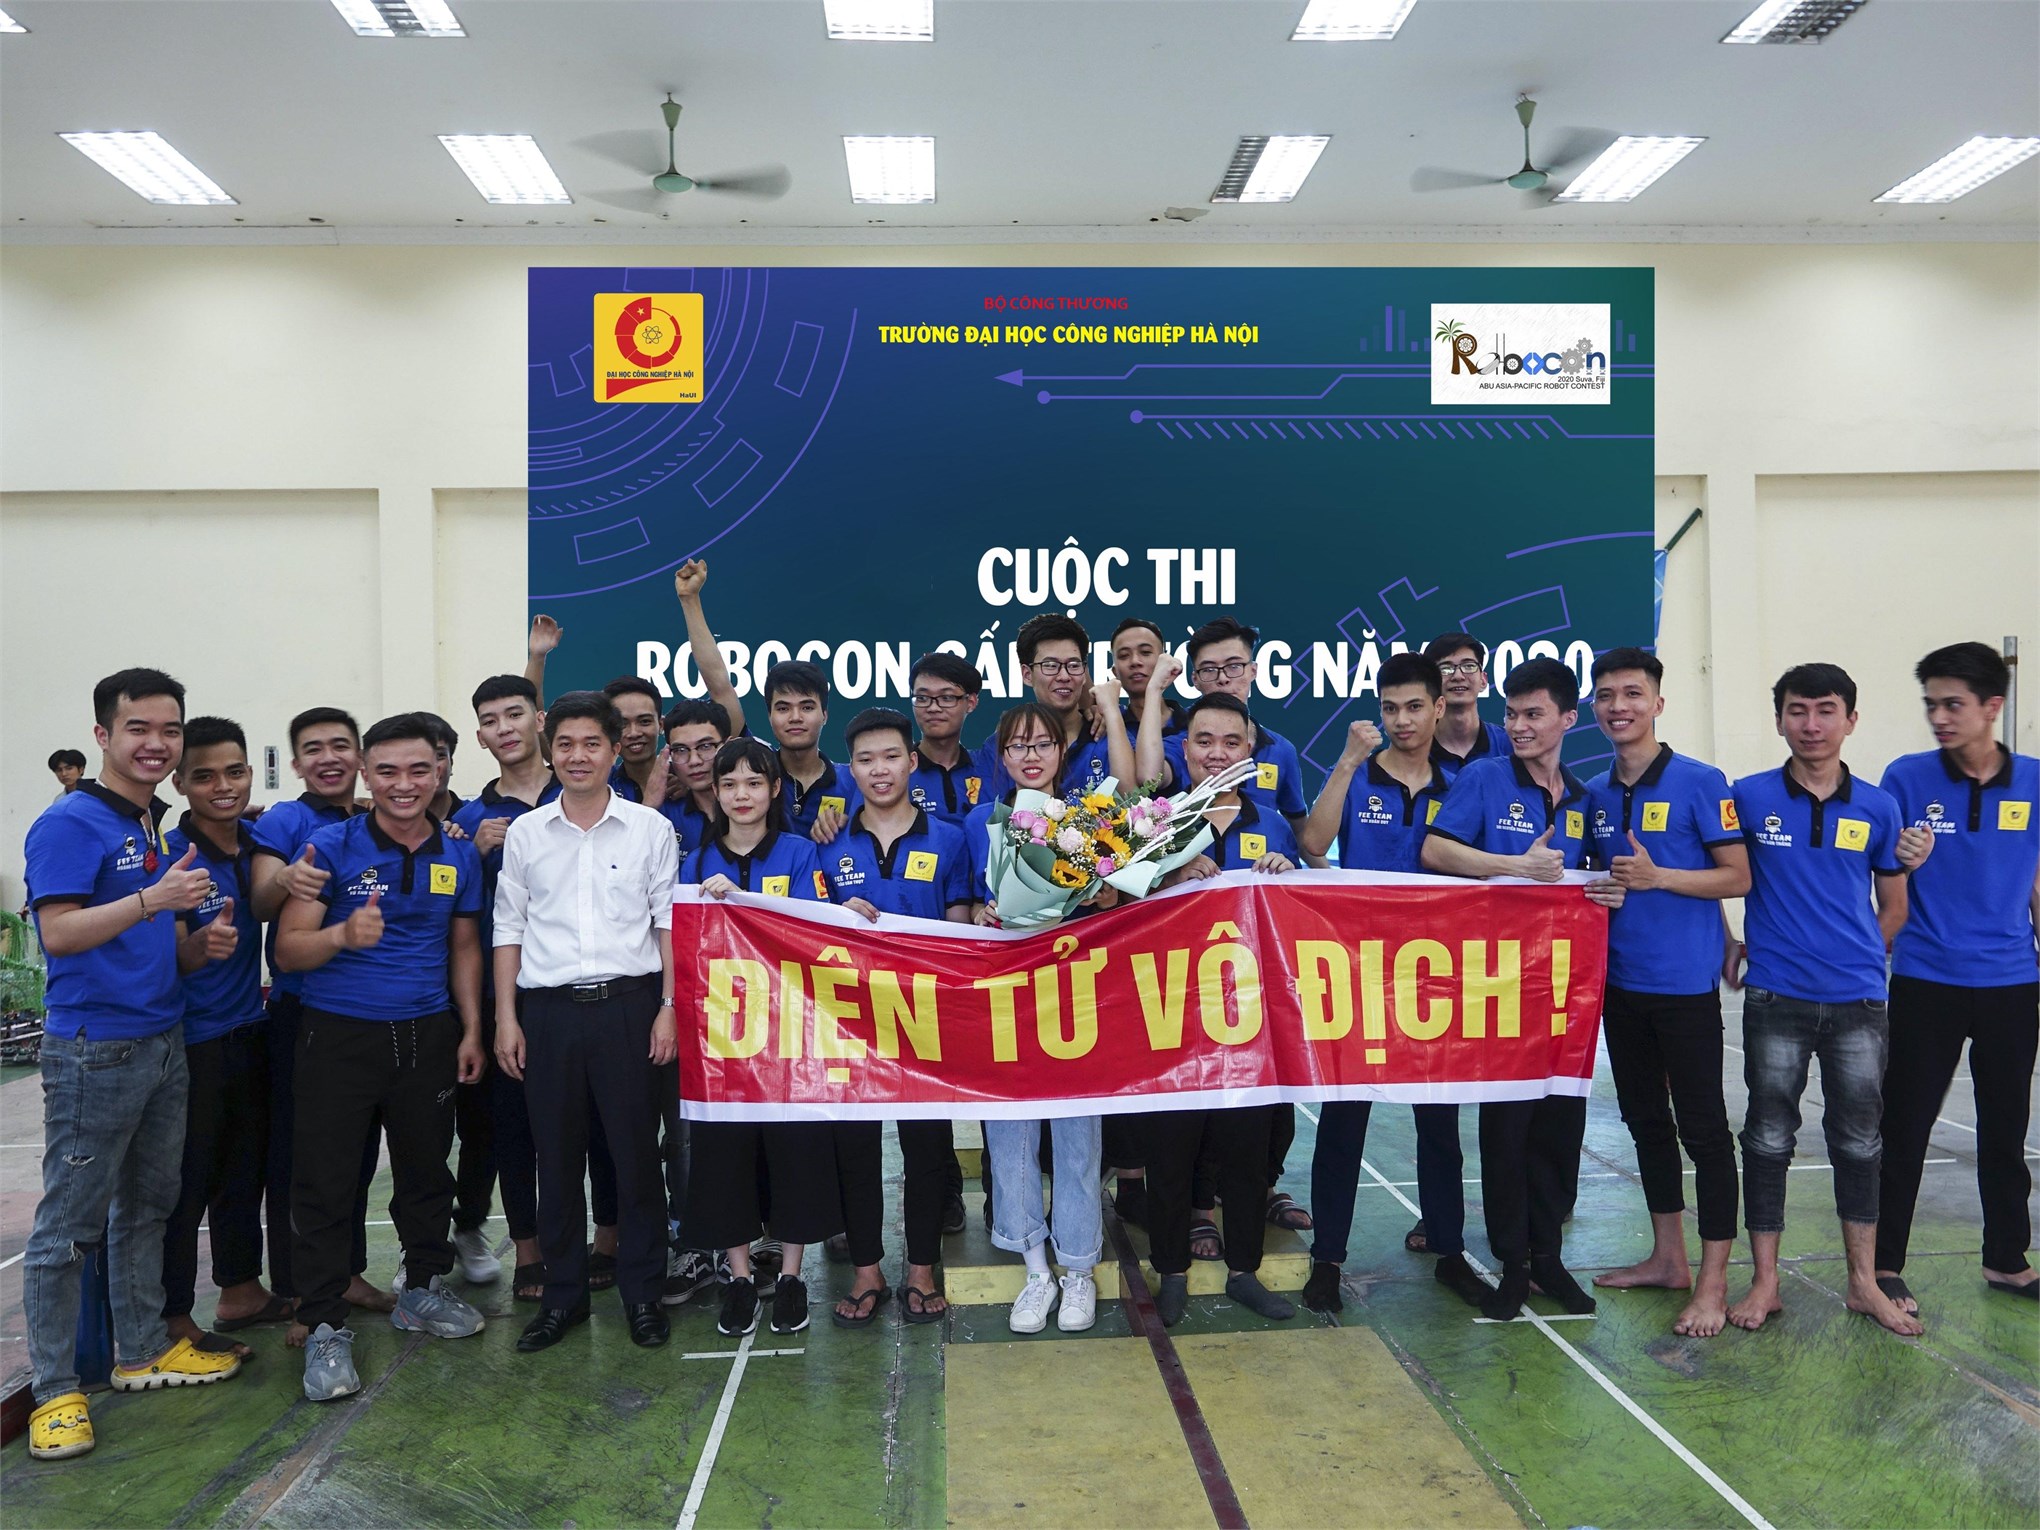 Đội ĐT-03 khoa Điện tử đạt giải Nhất cuộc thi robocon cấp Trường